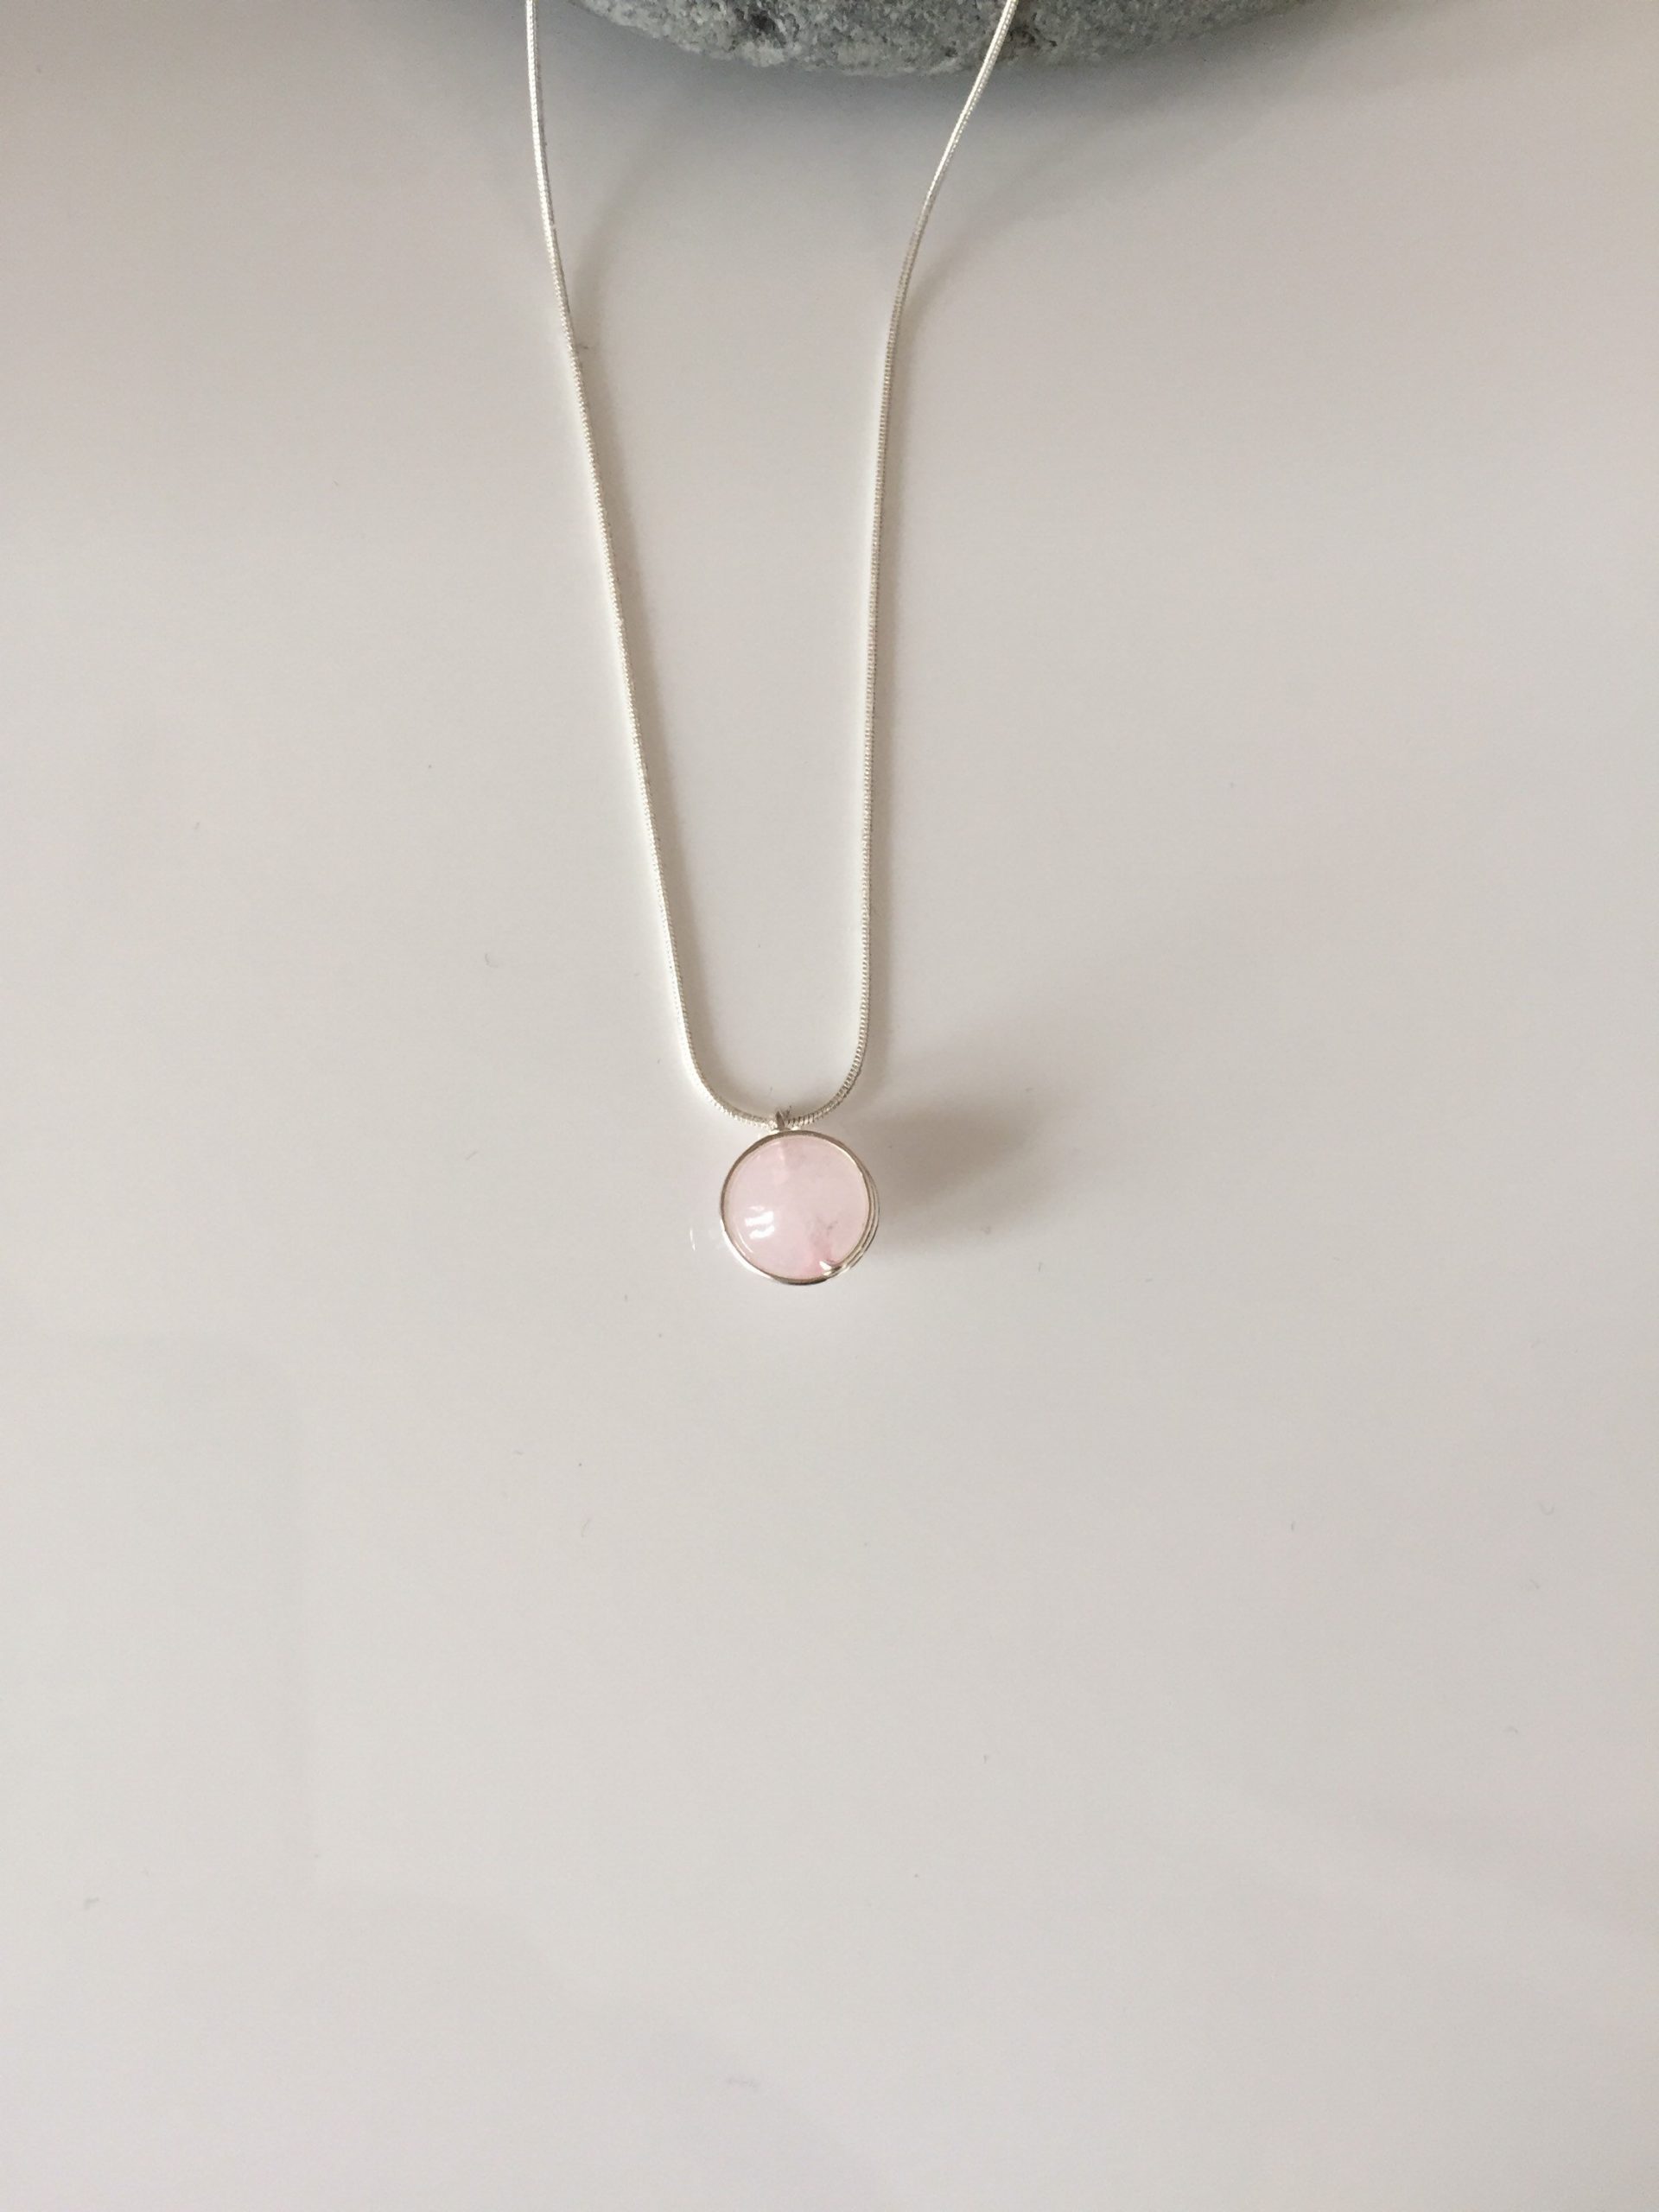 rose quartz necklace 3 5e45a9ef scaled